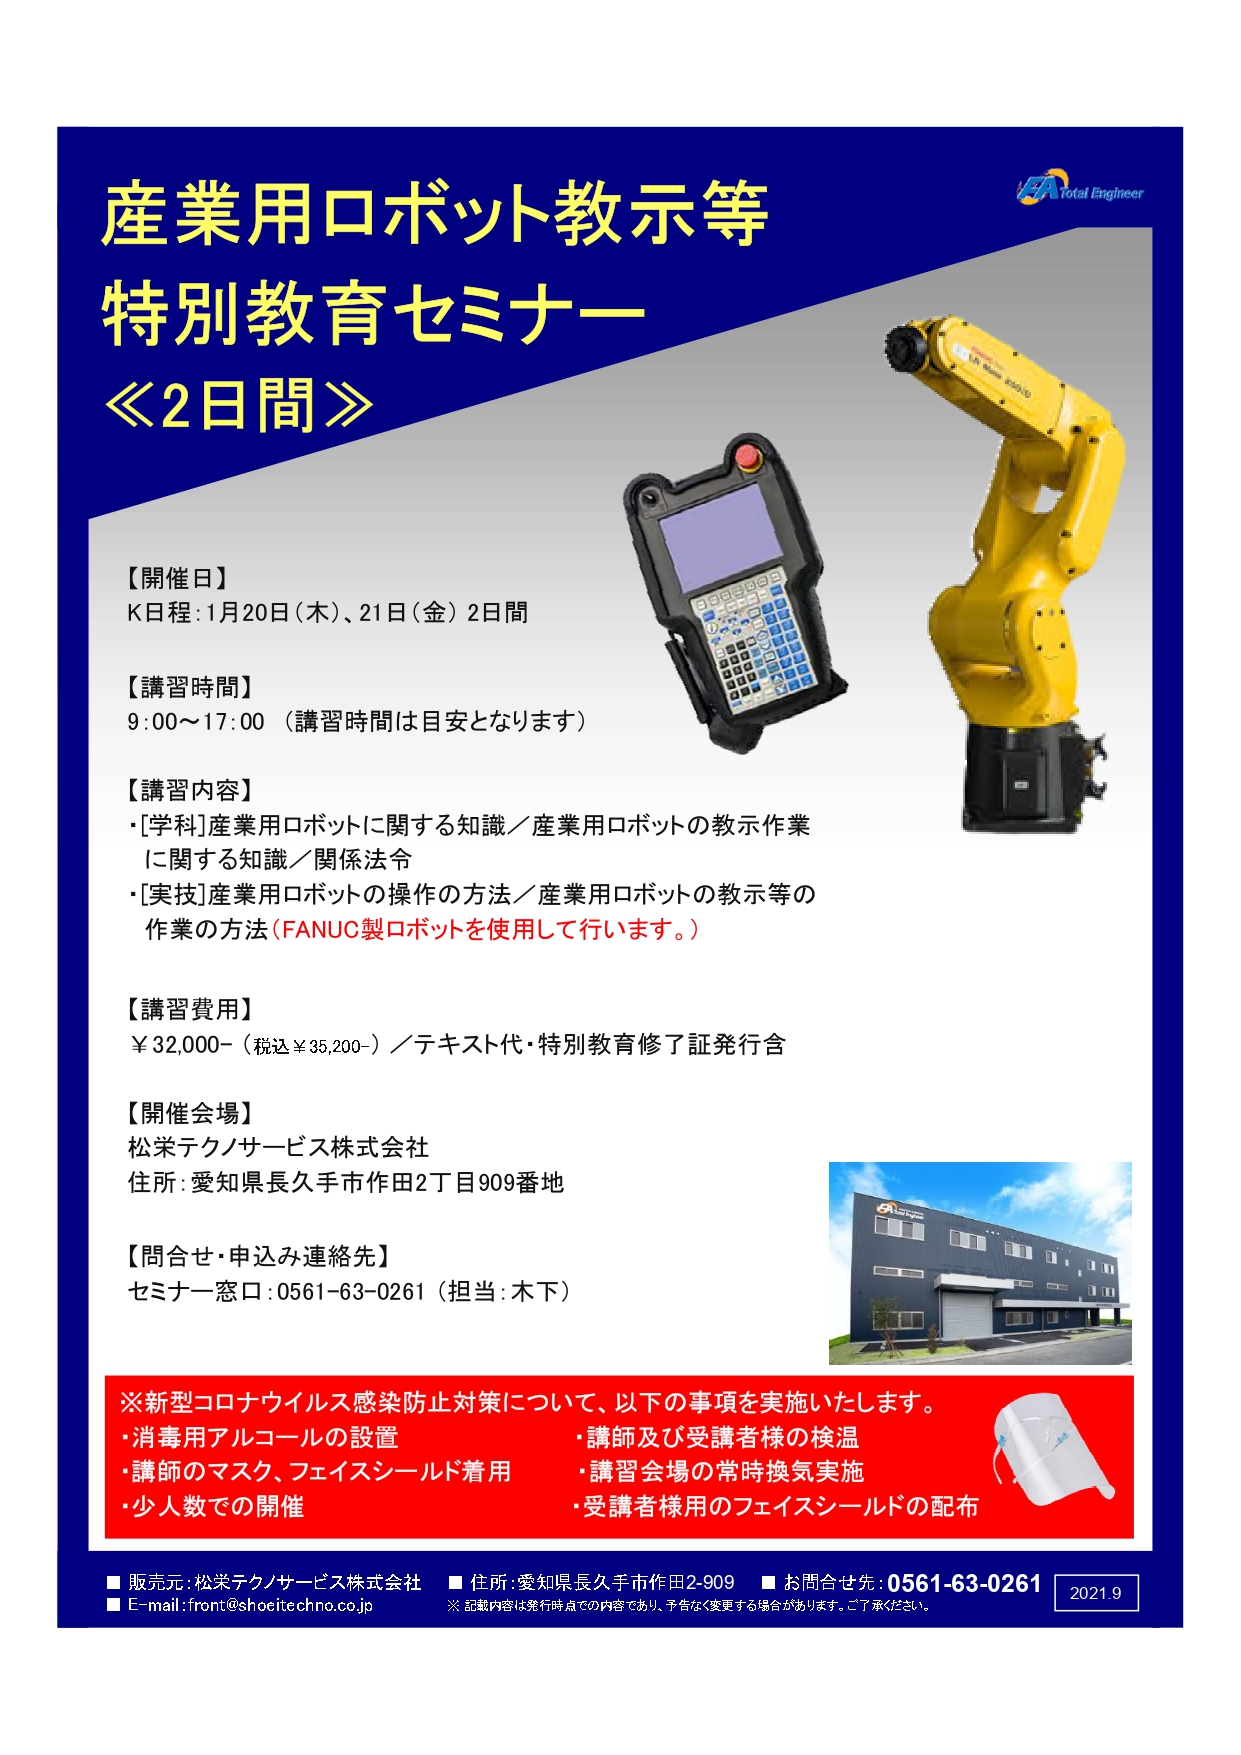 【終了しました】産業用ロボット特別教育（教示等）愛知会場開催のお知らせ【2022年1月】